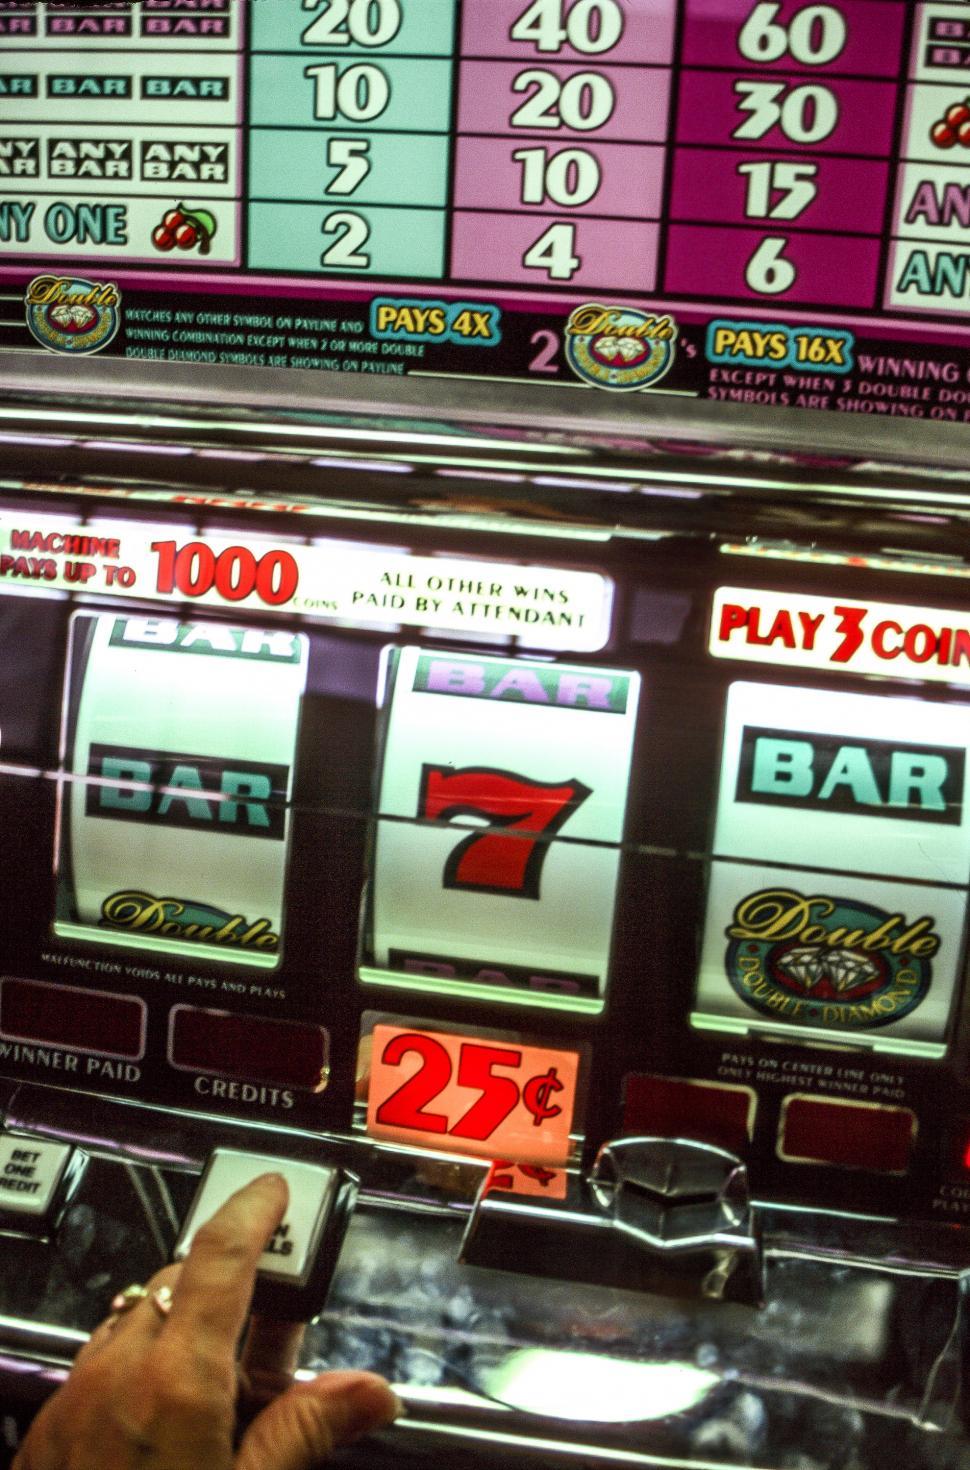 Free Image of Slot machine in Las Vegas 